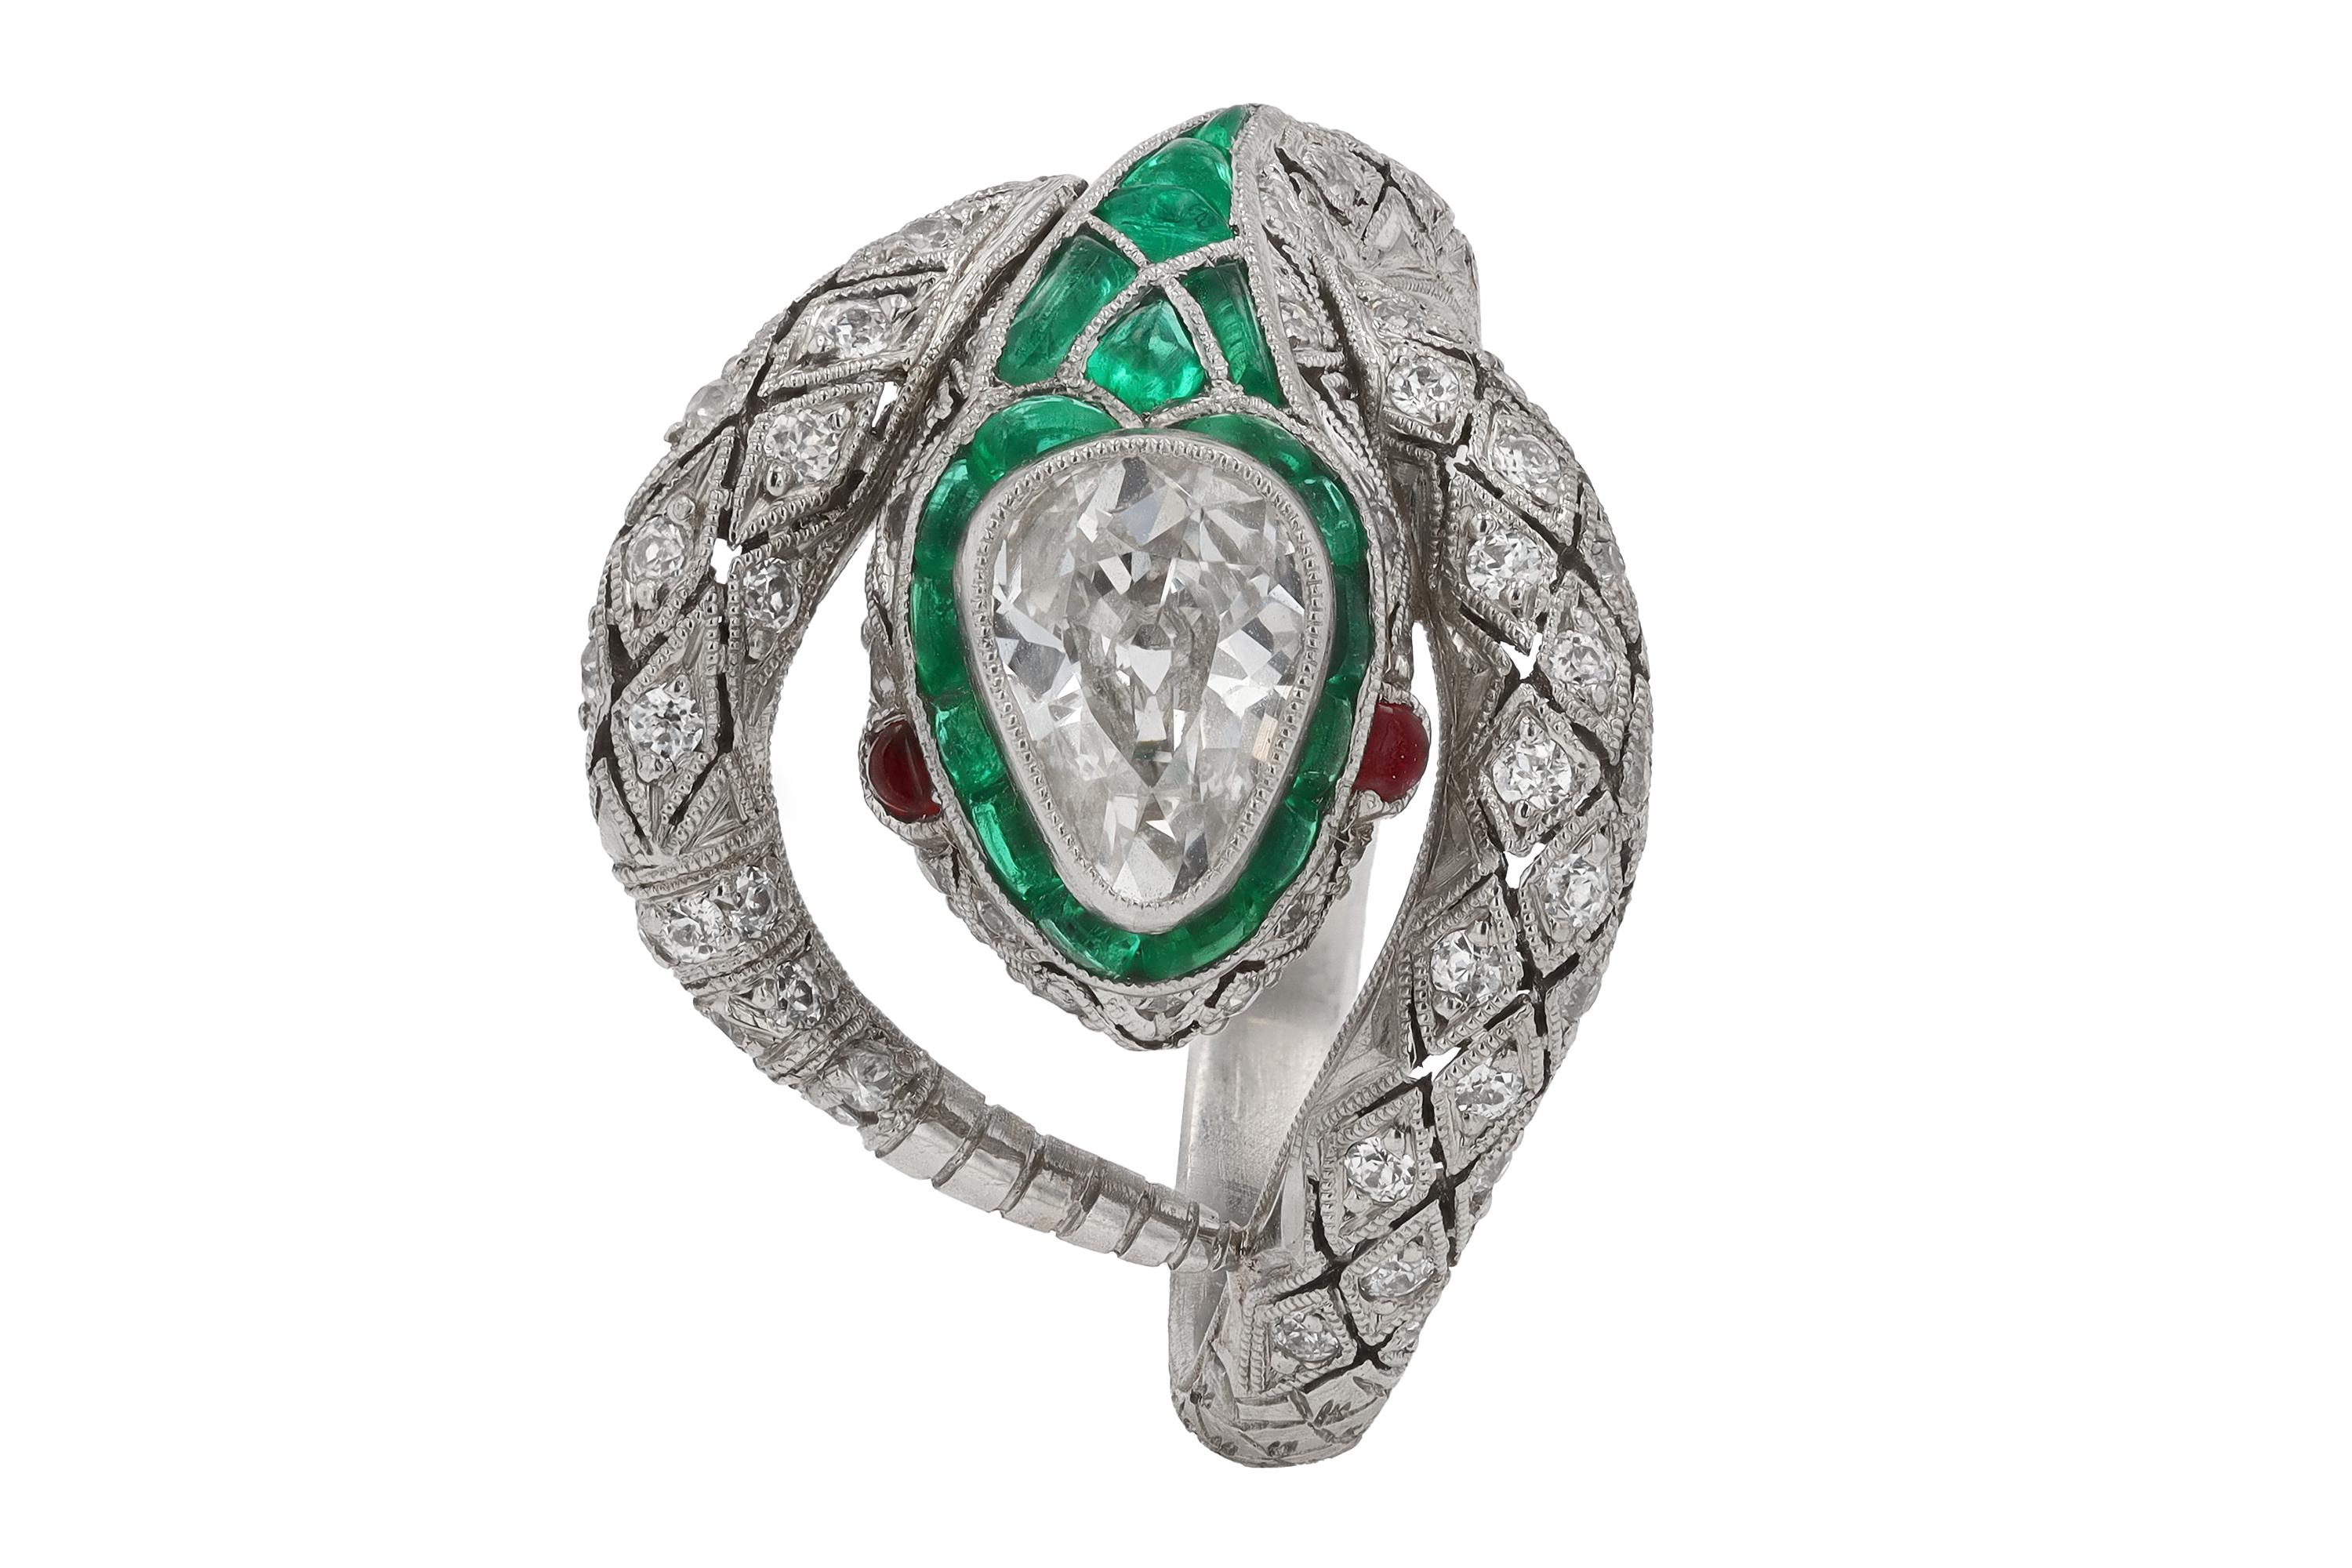 Women's Art Deco Inspired Antique Diamond & Emerald Snake Ring